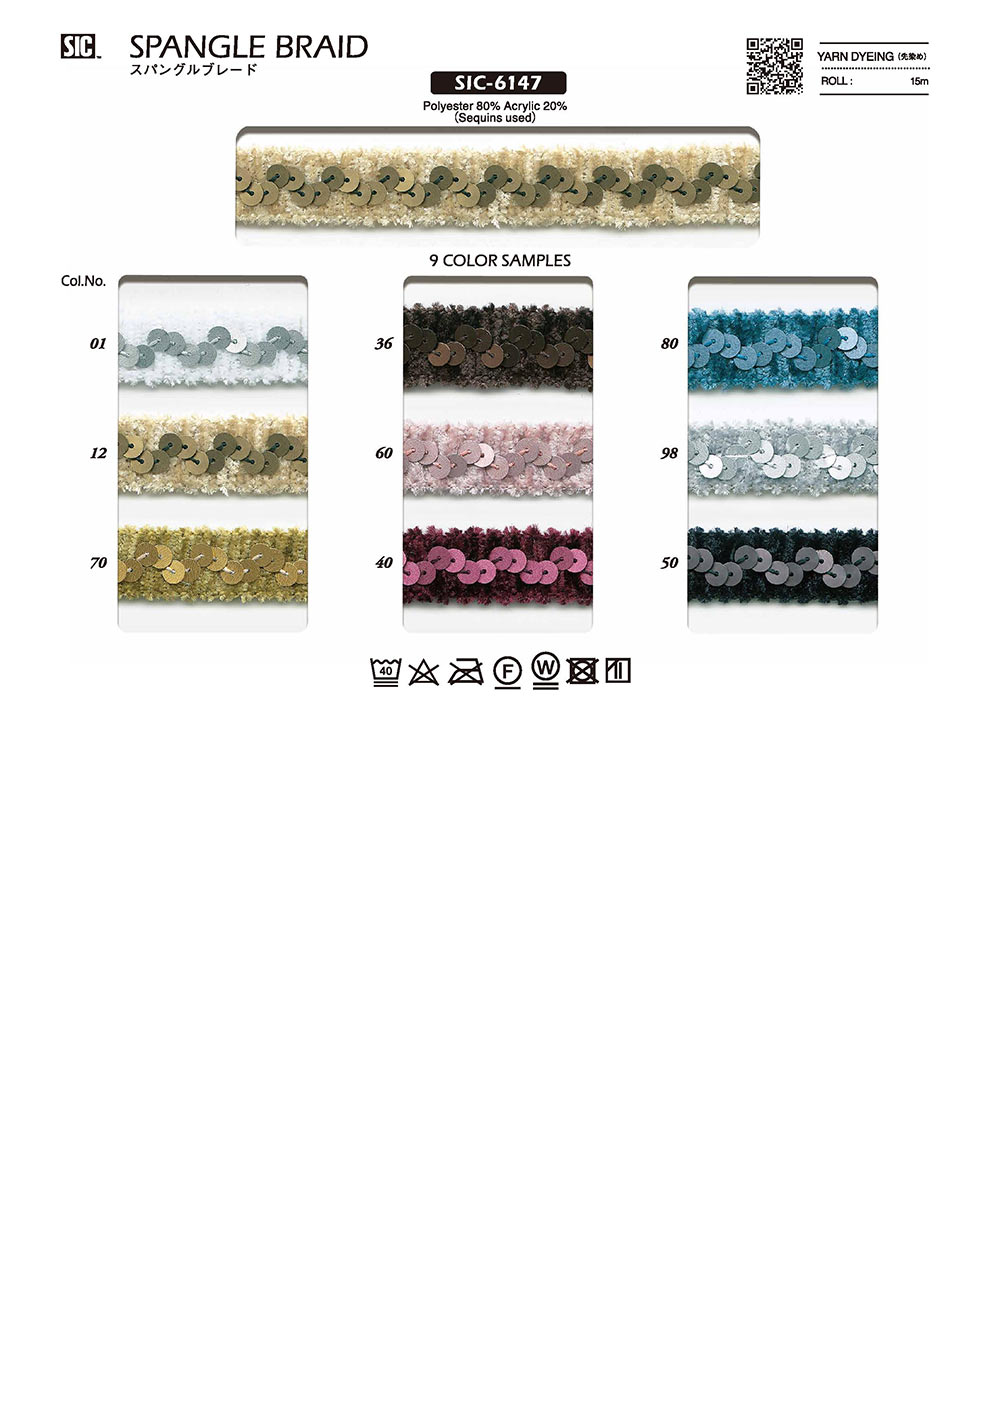 SIC-6147 Spangle Mall Braid[Ribbon Tape Cord] SHINDO(SIC)